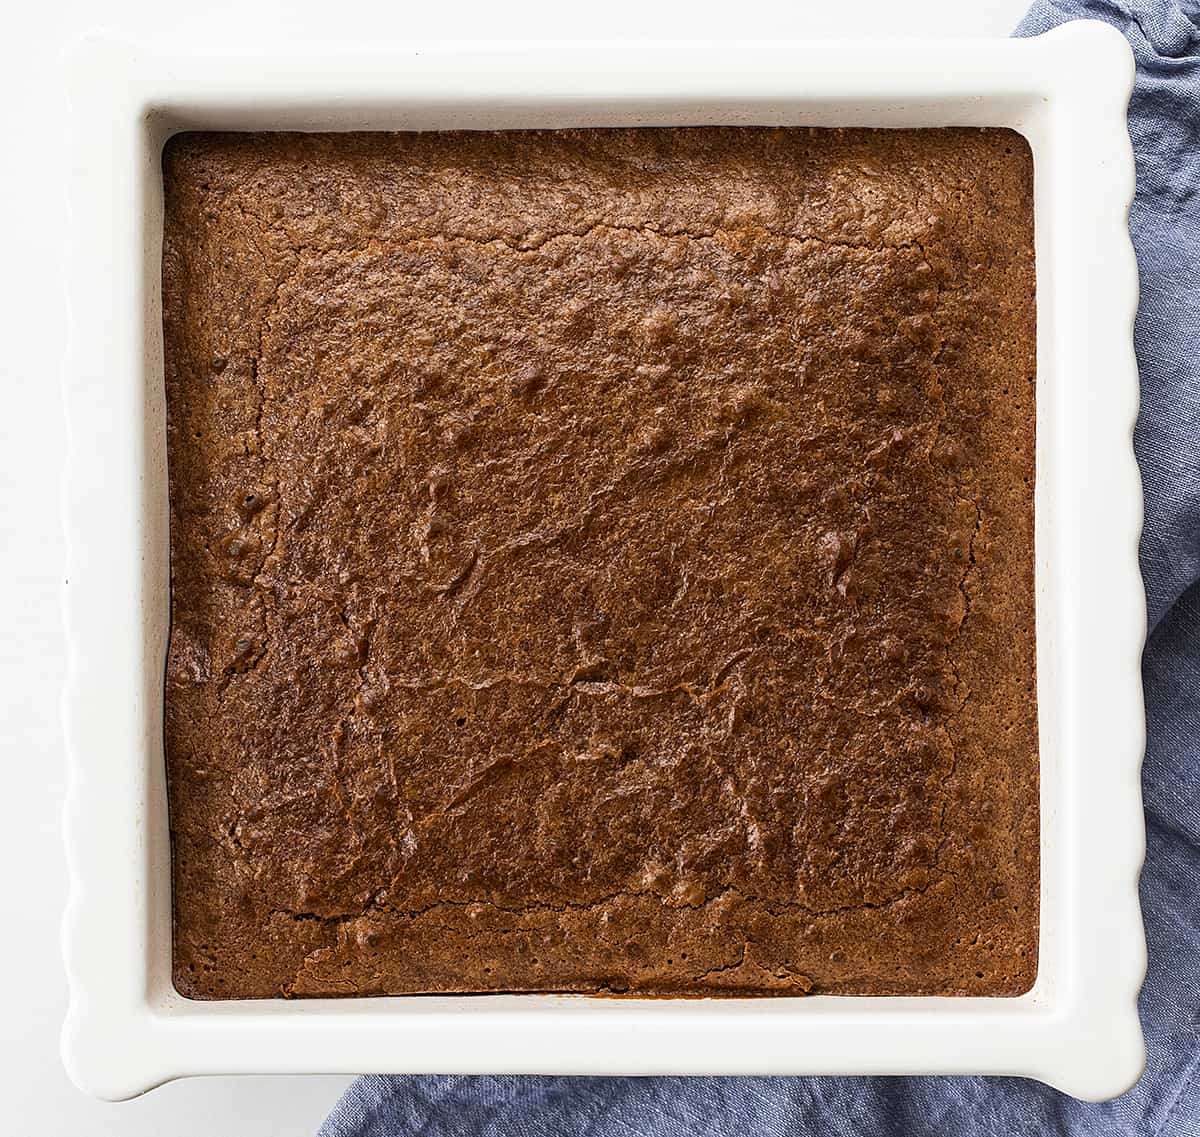 容易酵母果仁巧克力的顶上的图象在白色烘烤平底锅